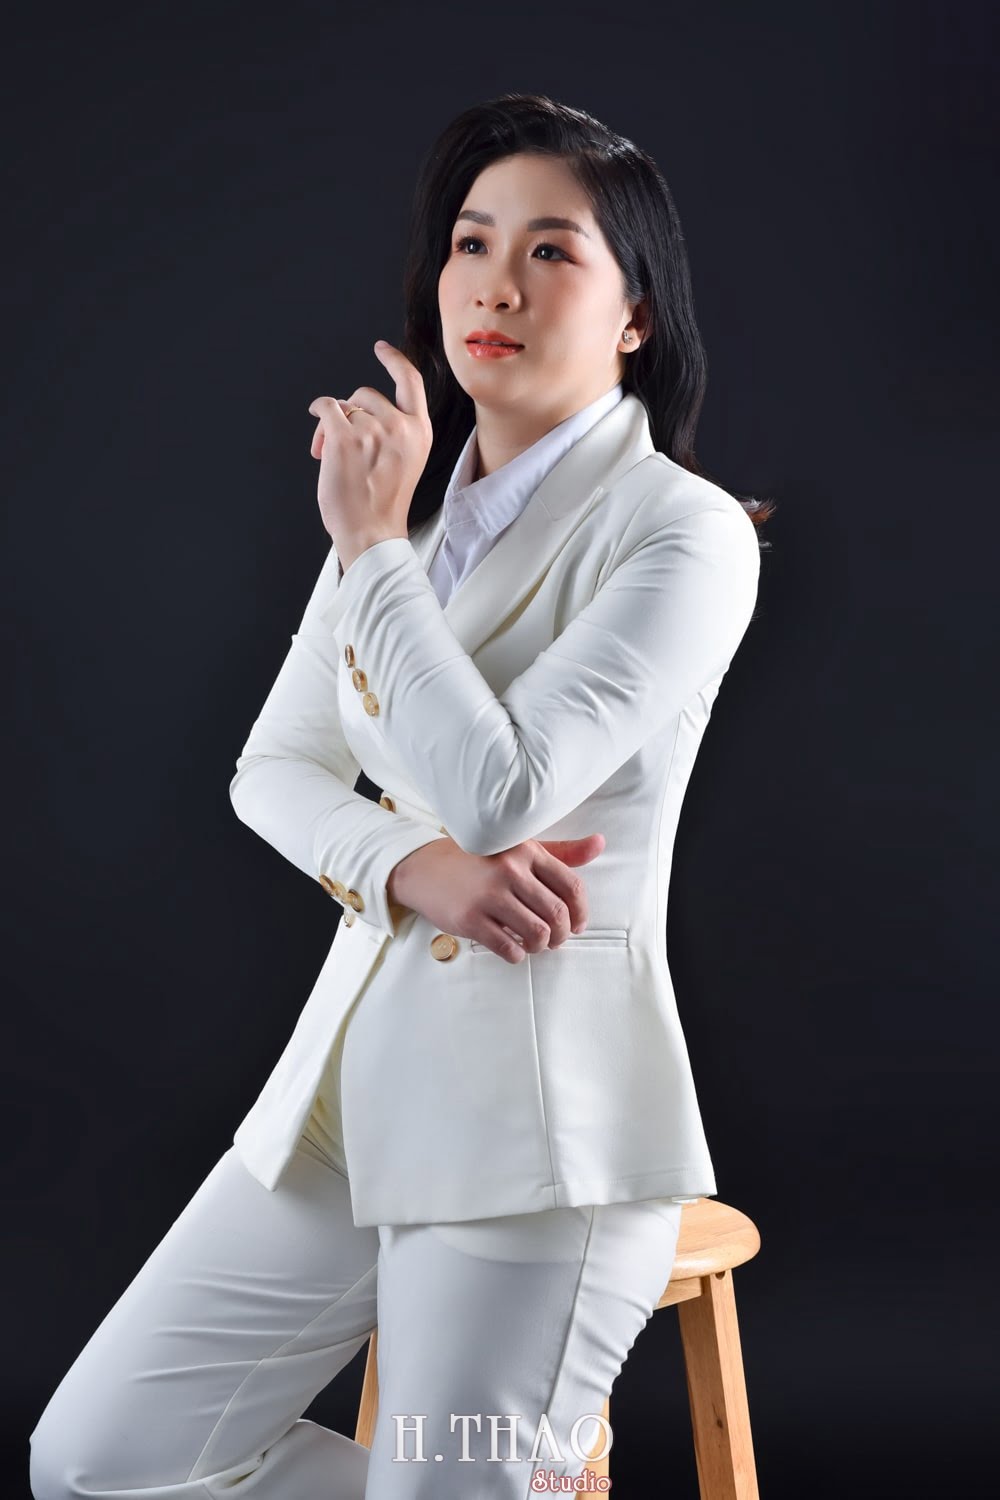 Anh doanh nhan nu 2 min - #35 cách tạo dáng chụp ảnh chân dung đẹp – HThao Studio